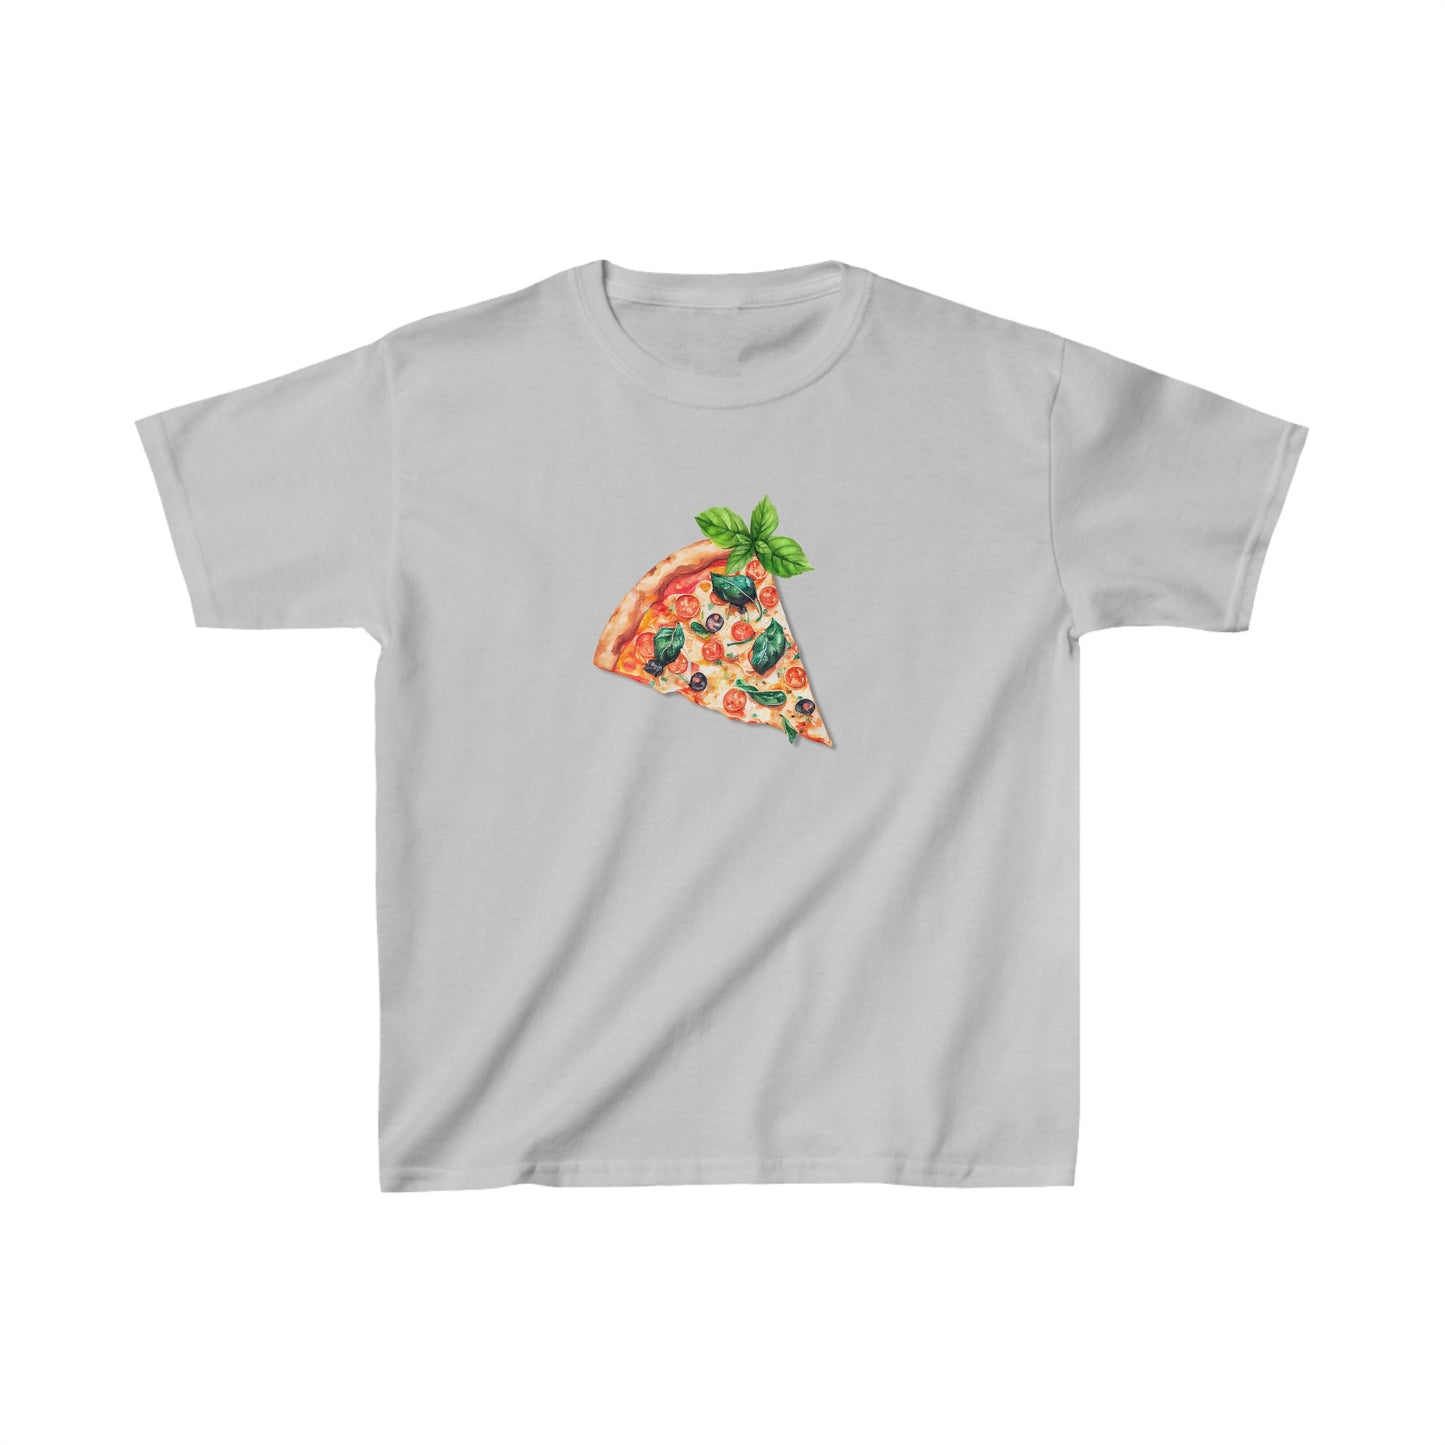 Women's Graphic Baby Tee Retro Pizza Slice Shirt.